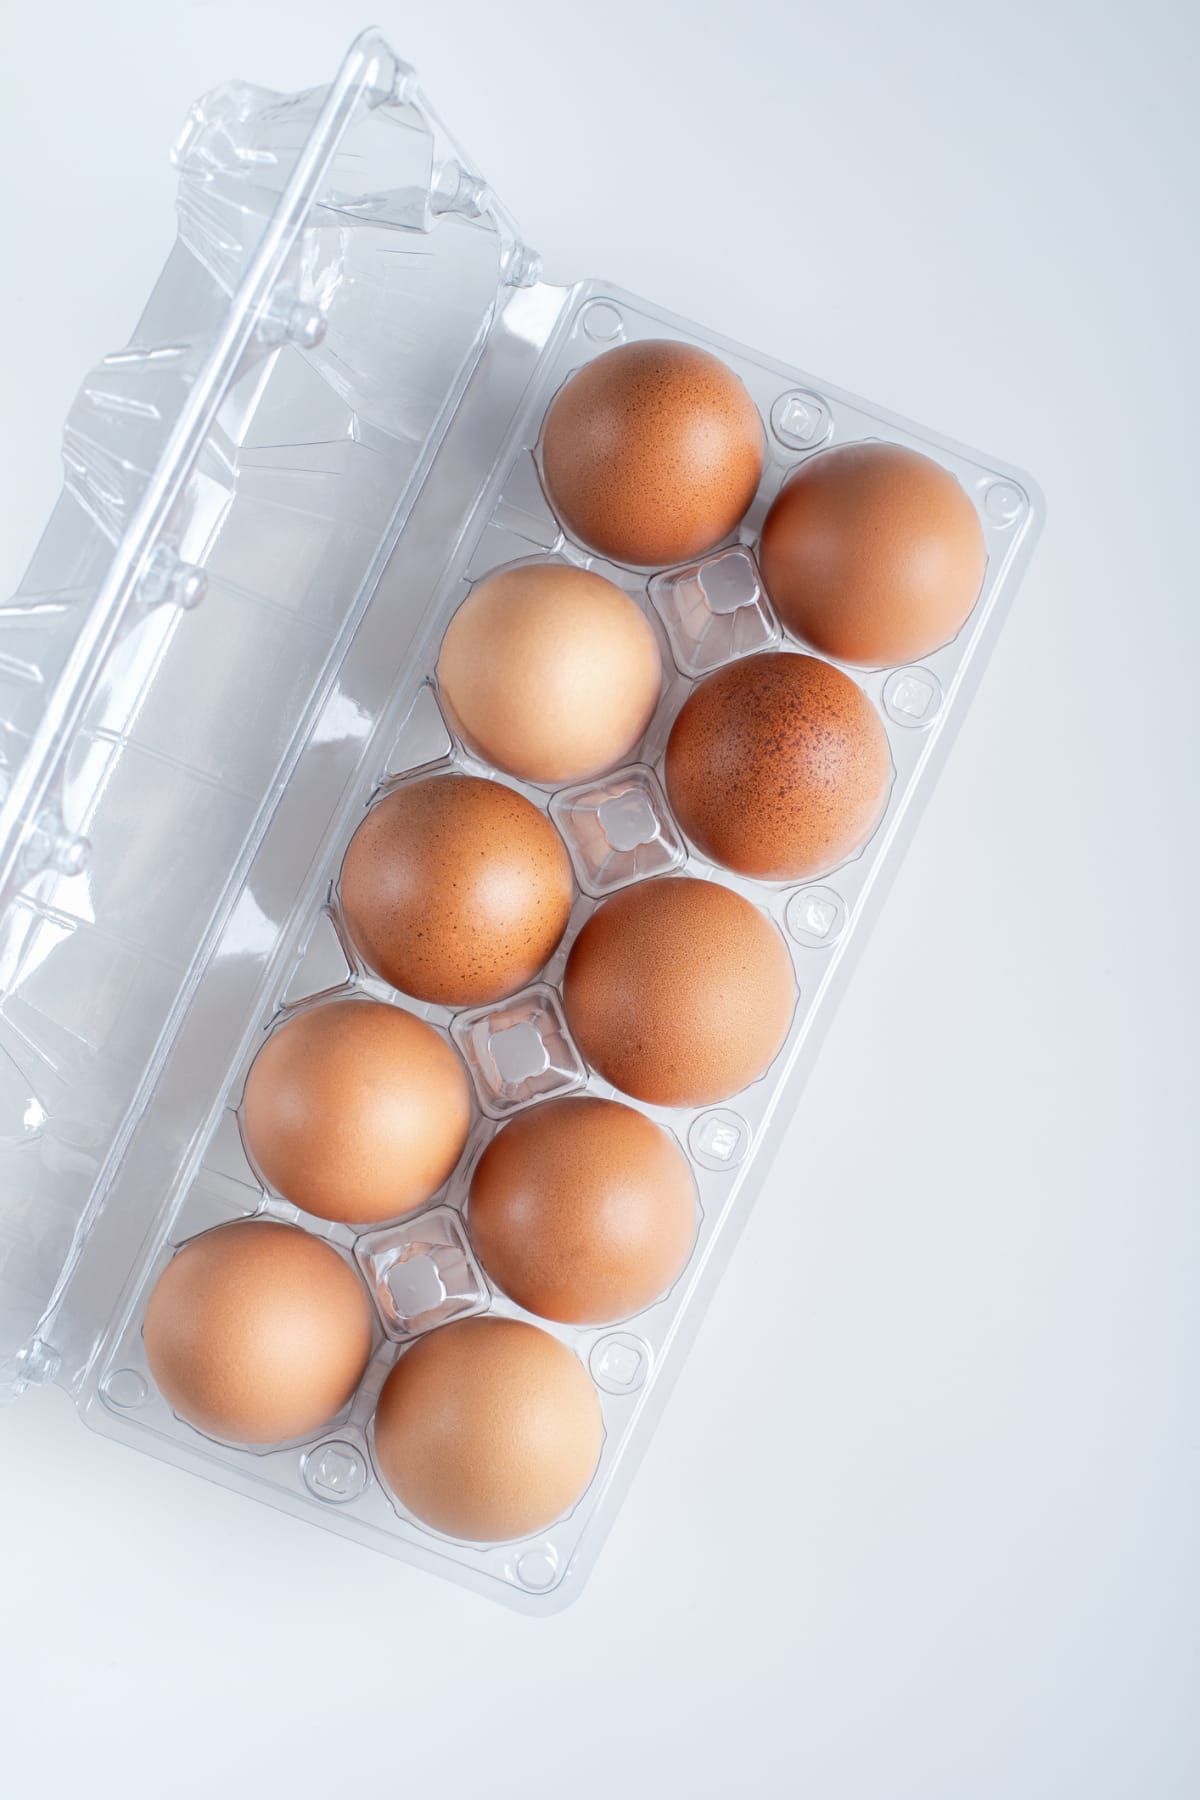 Plastic carton of eggs